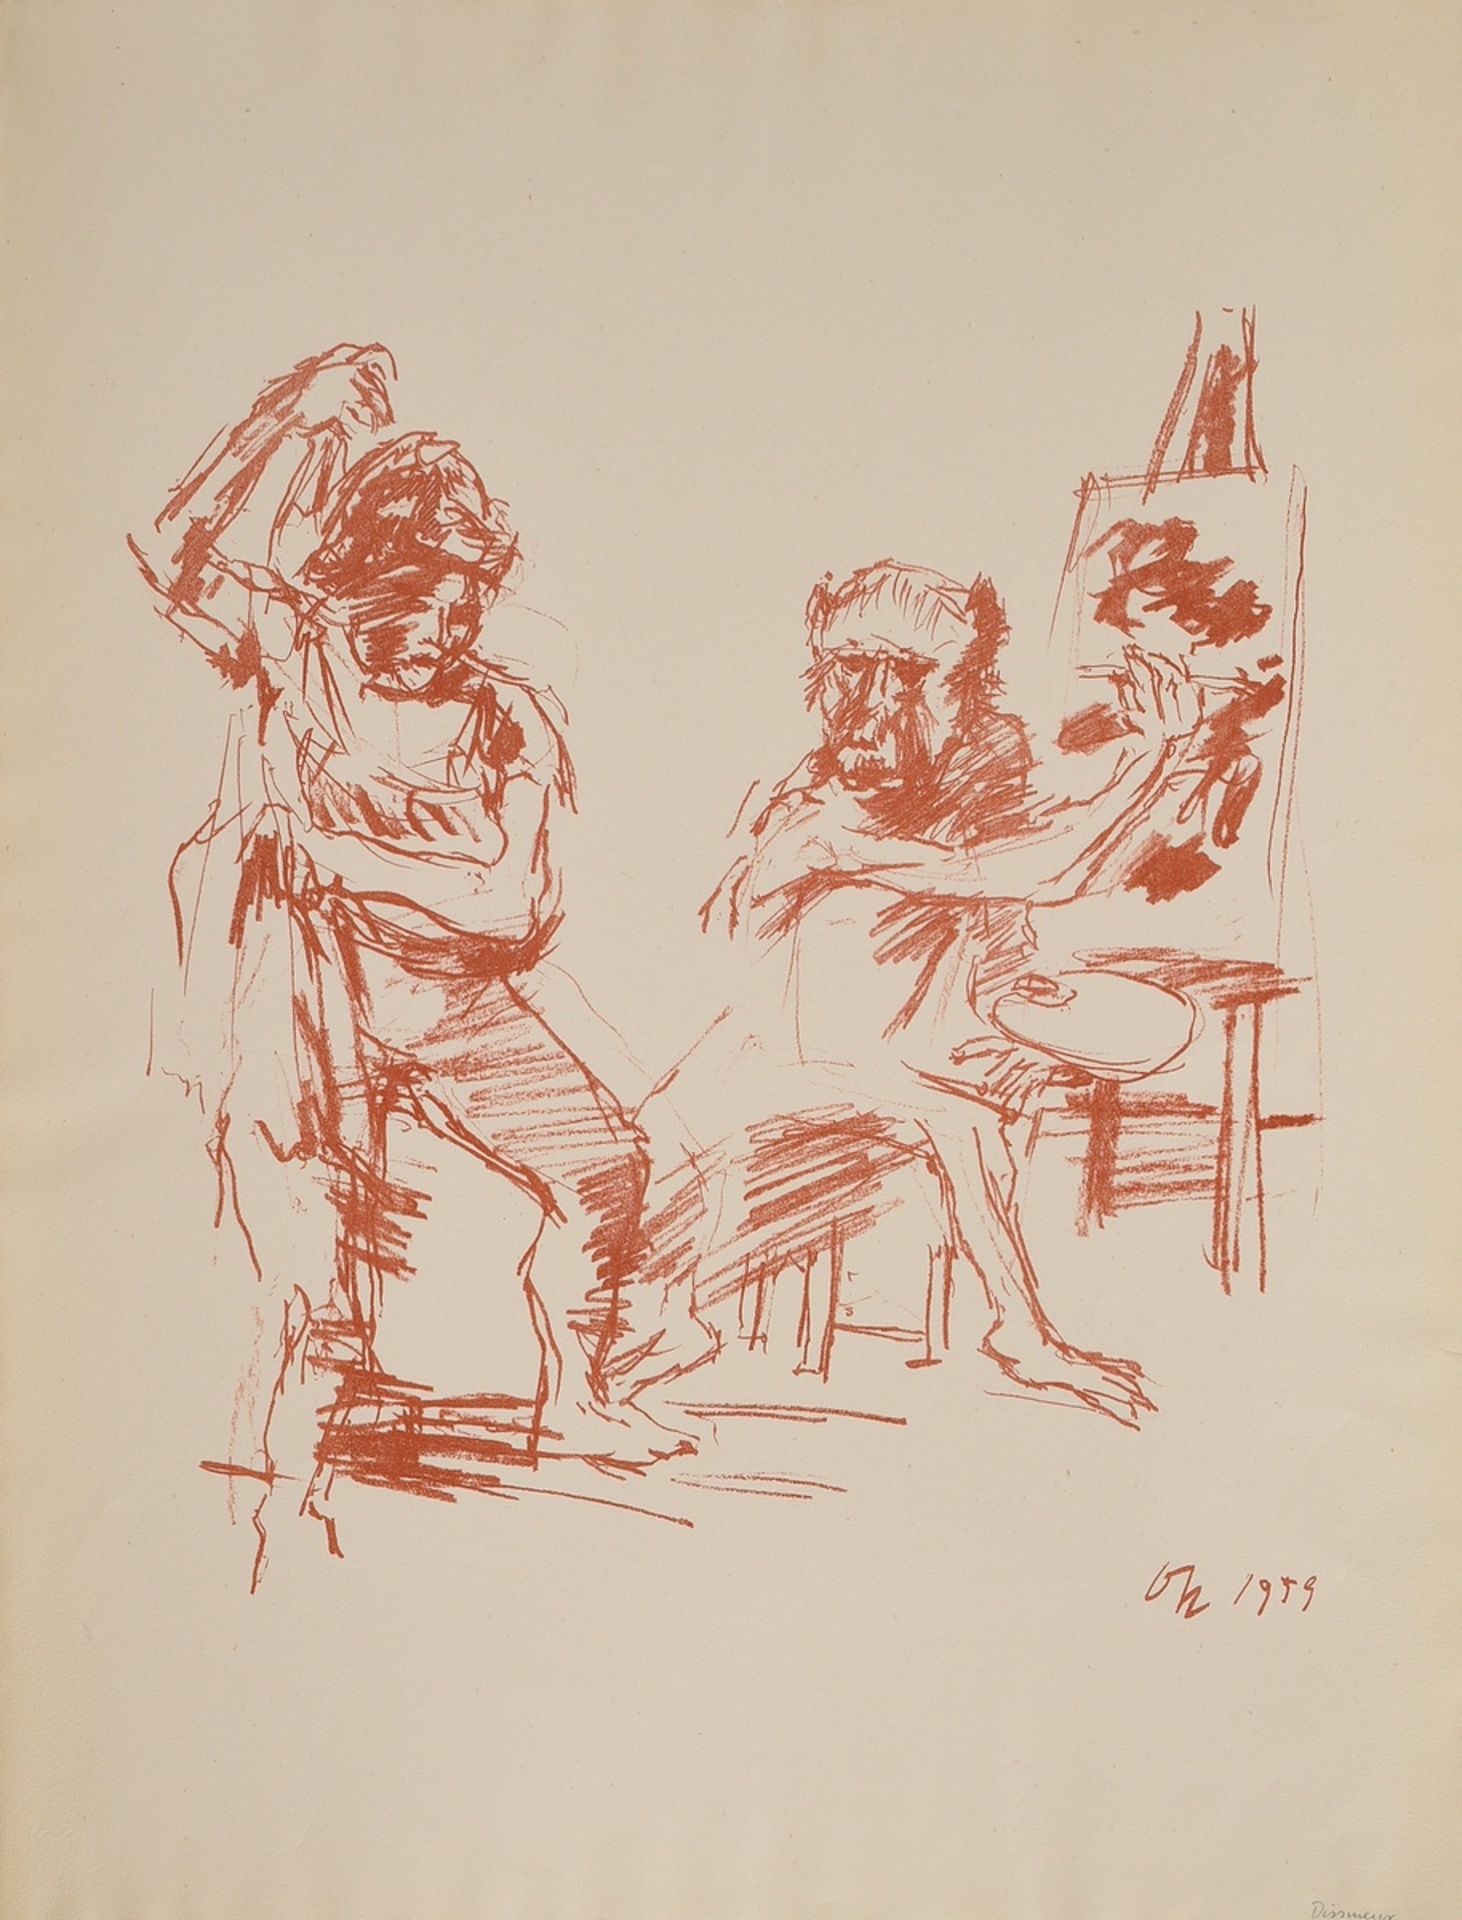 Kokoschka, Oskar (1886-1980) ‘Action Painter’ 1959, colour lithograph, monogr./dat. below in stone,